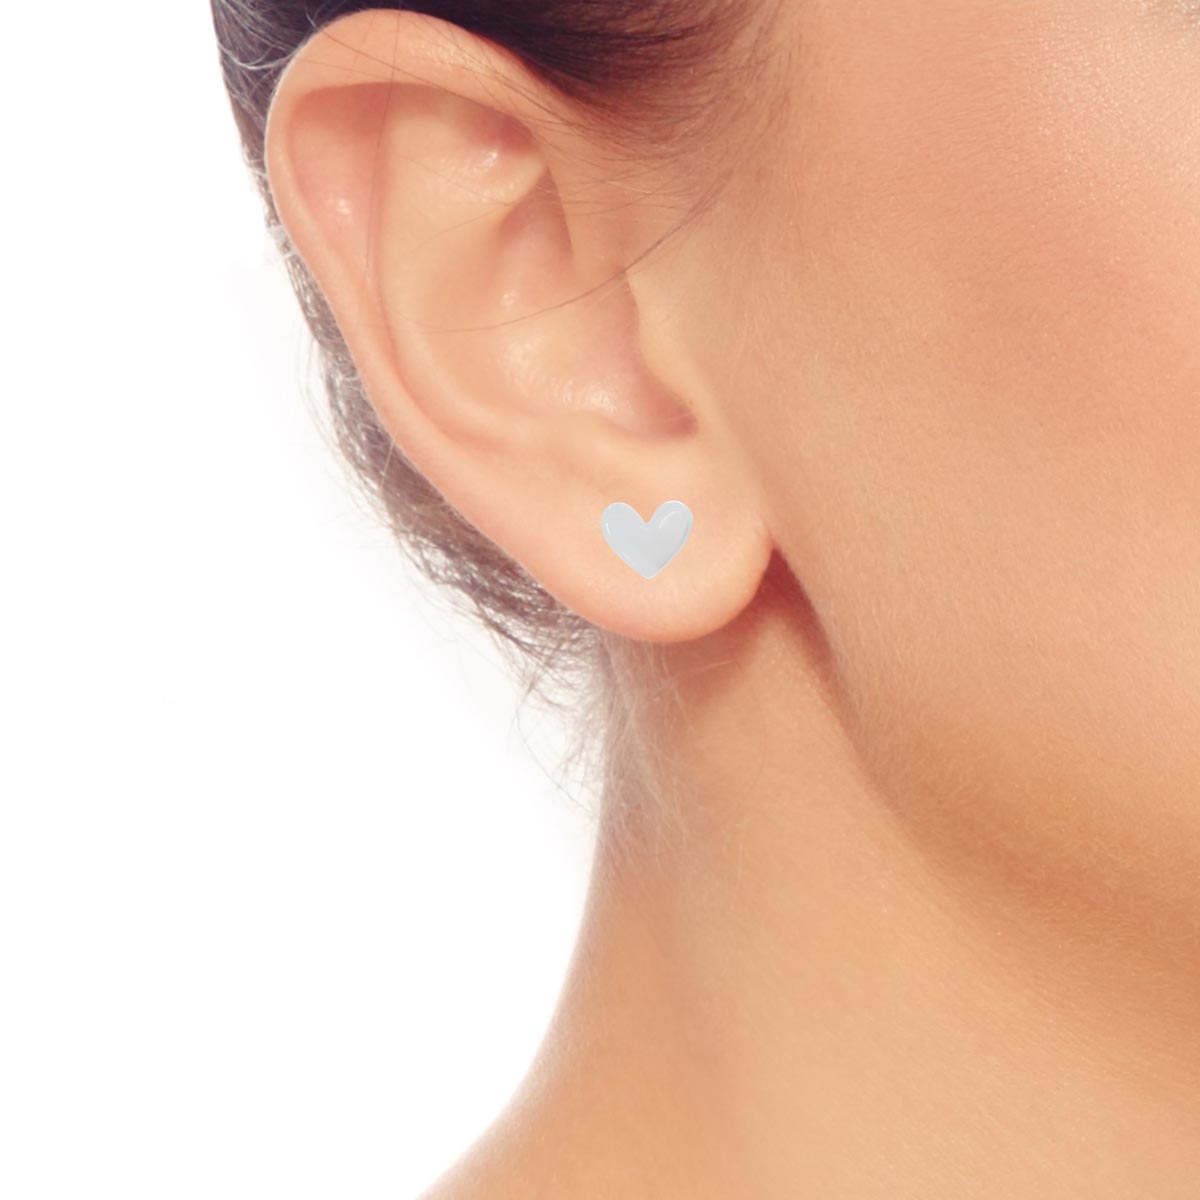 E.L. Designs Sweet Heart Stud Earrings in Sterling Silver